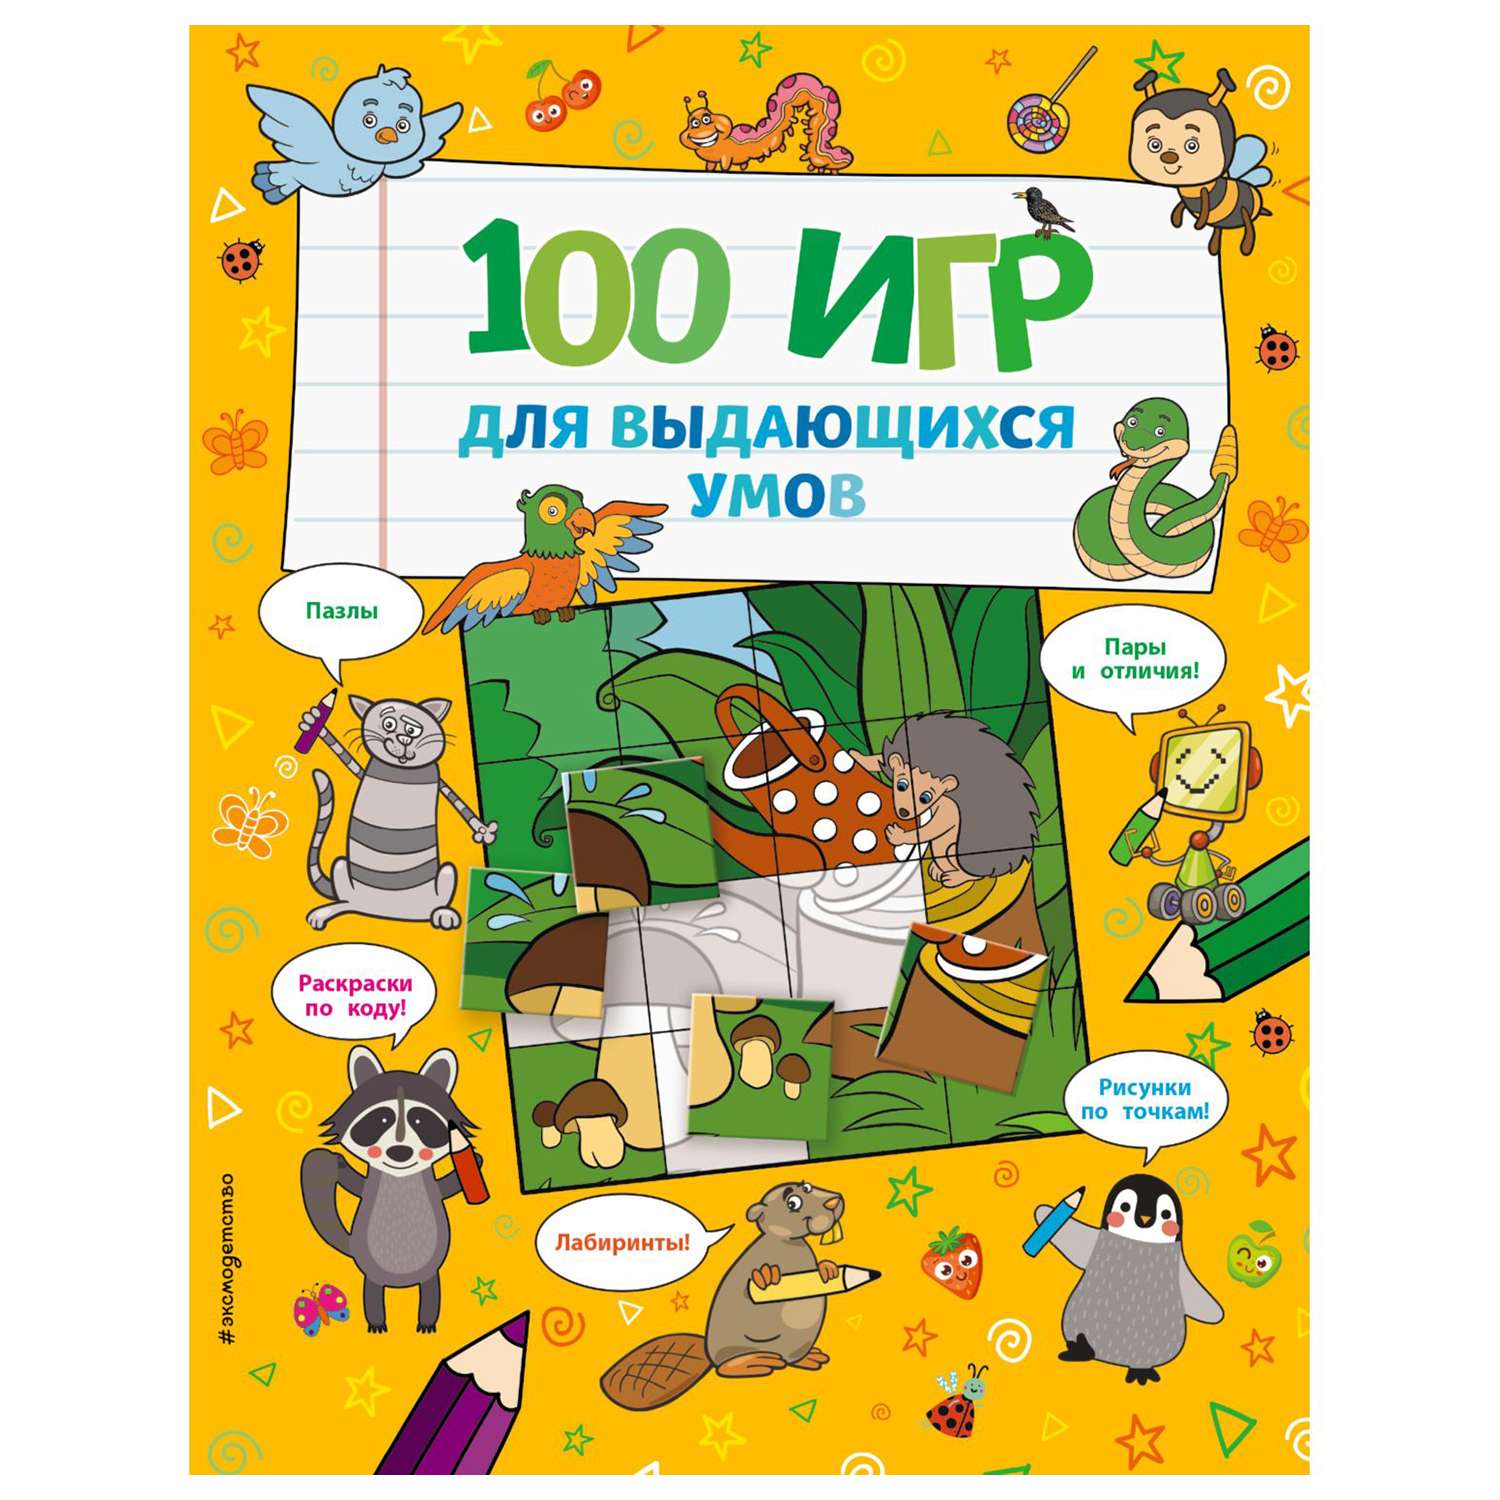 Книга Эксмо 100 игр для выдающихся умов - фото 1